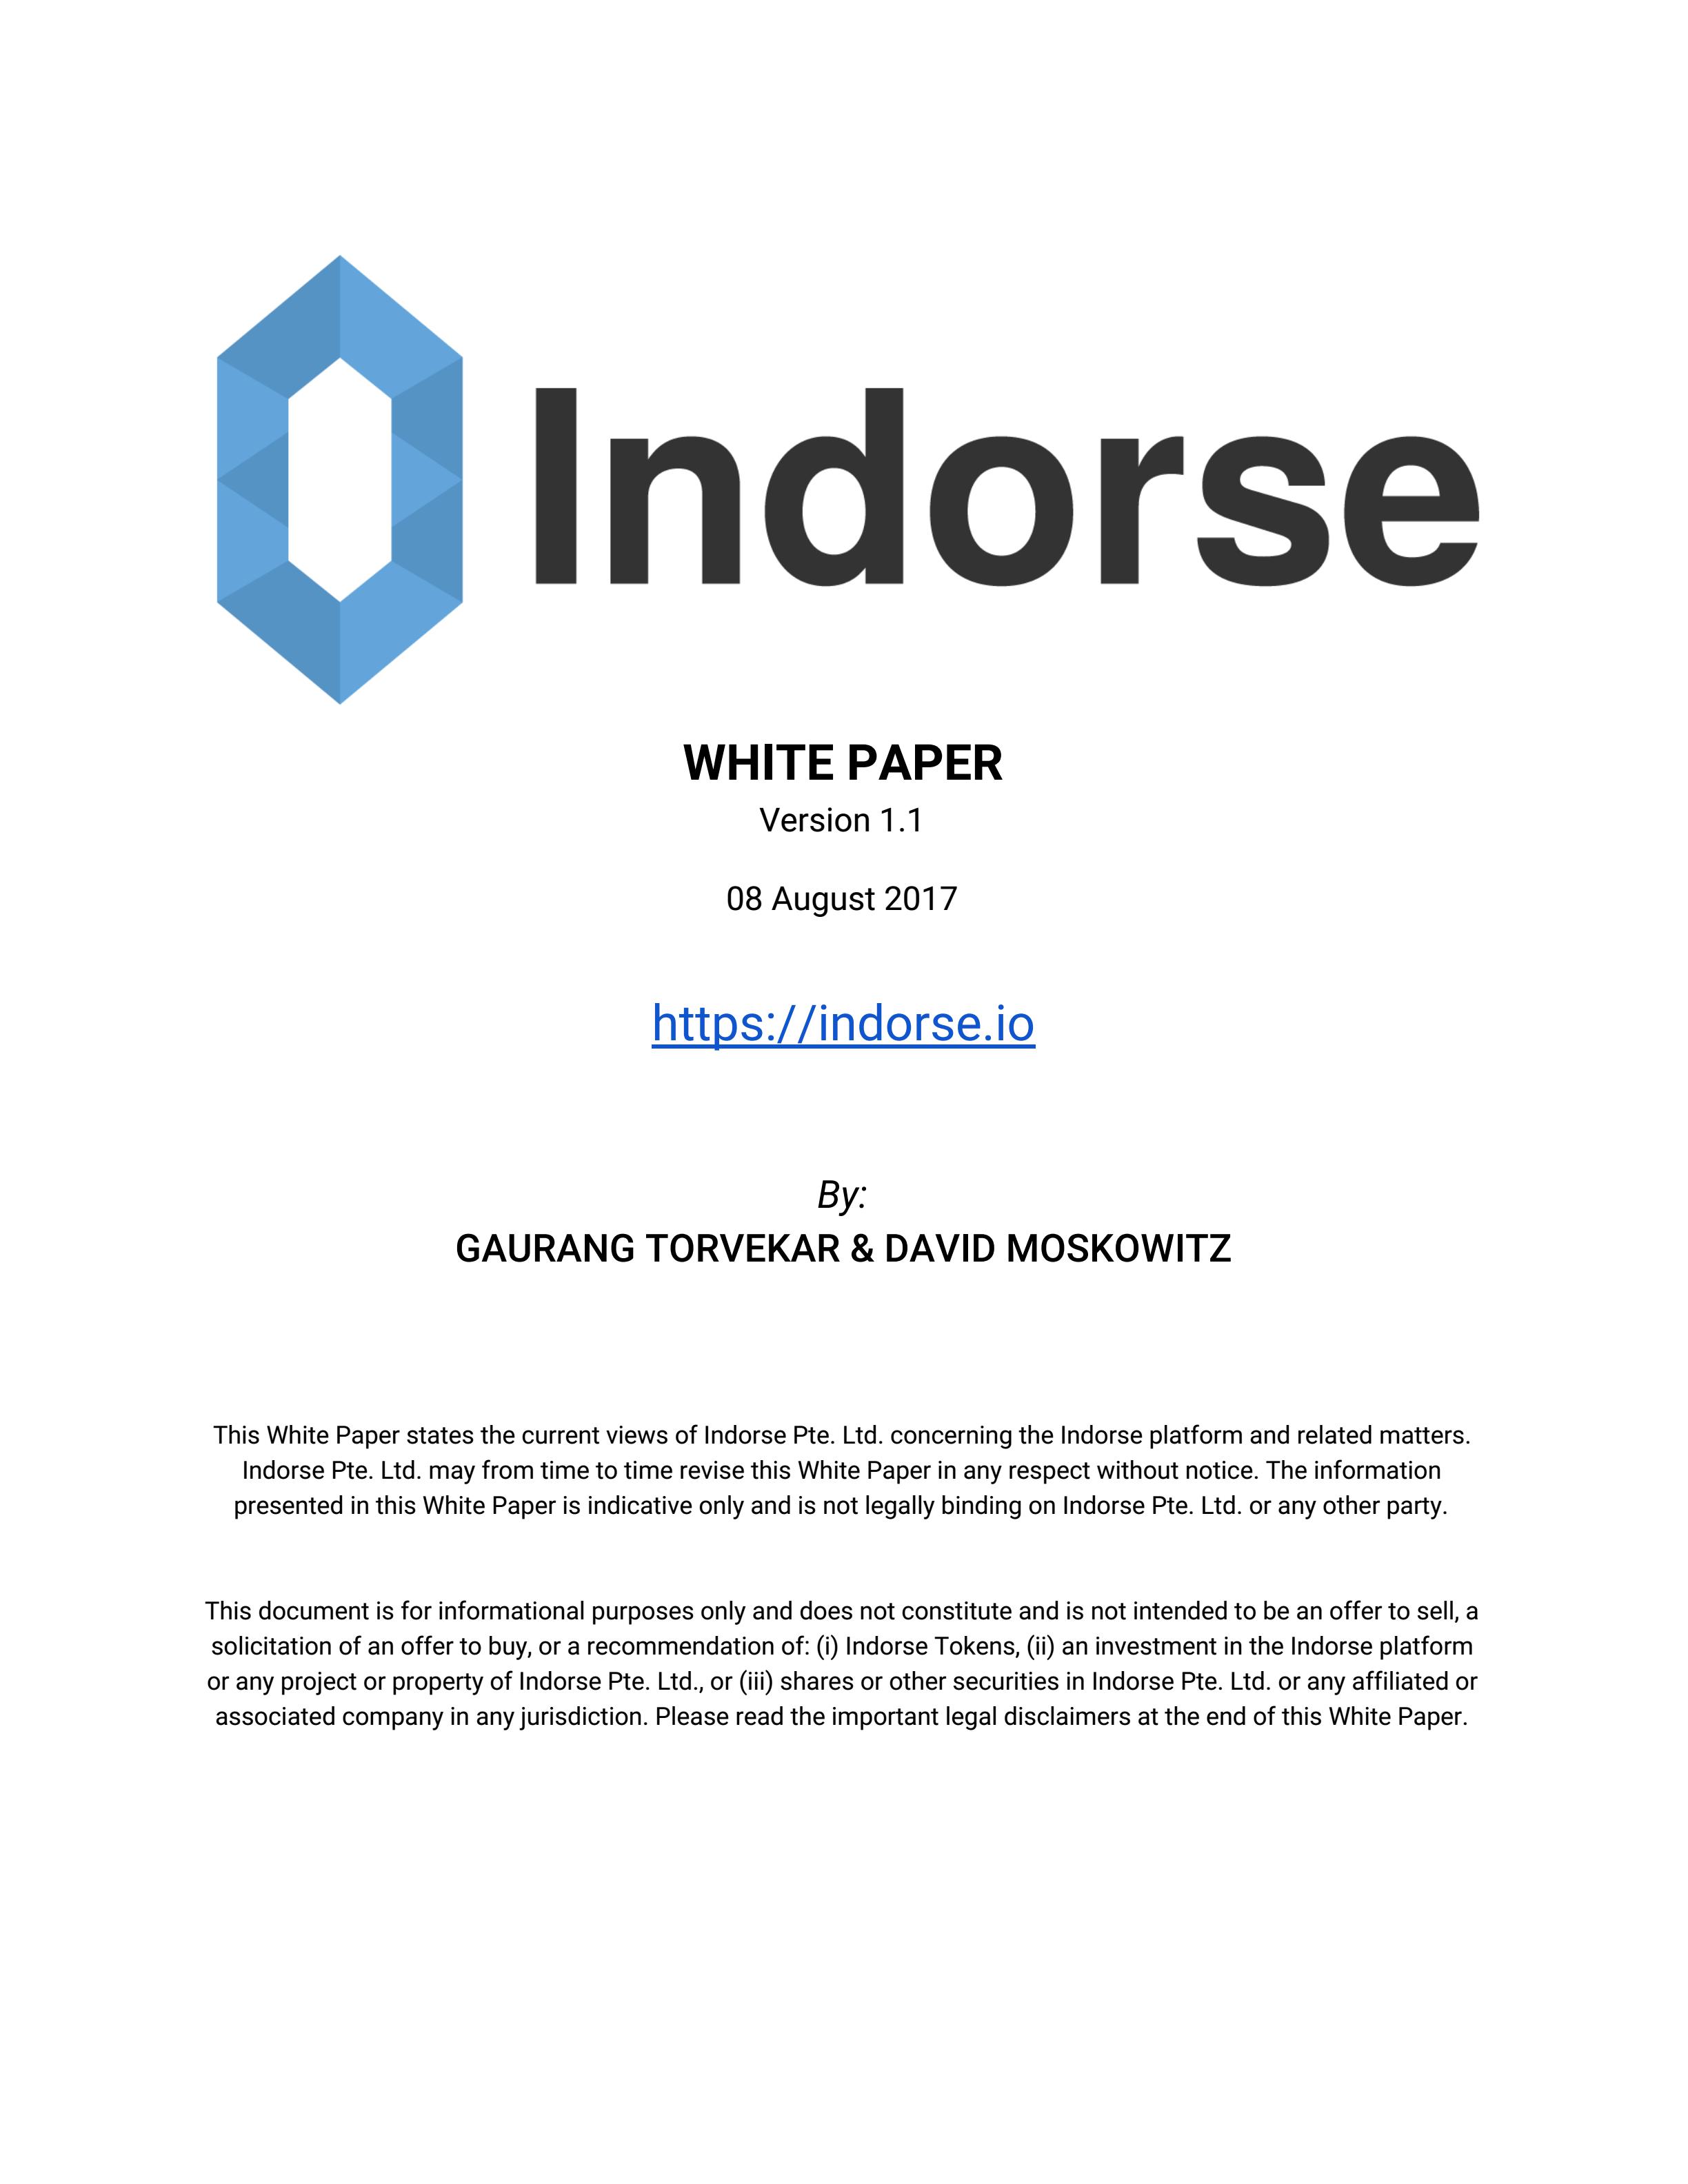 IND_Indorse-Whitepaper-v1.1_00.jpg